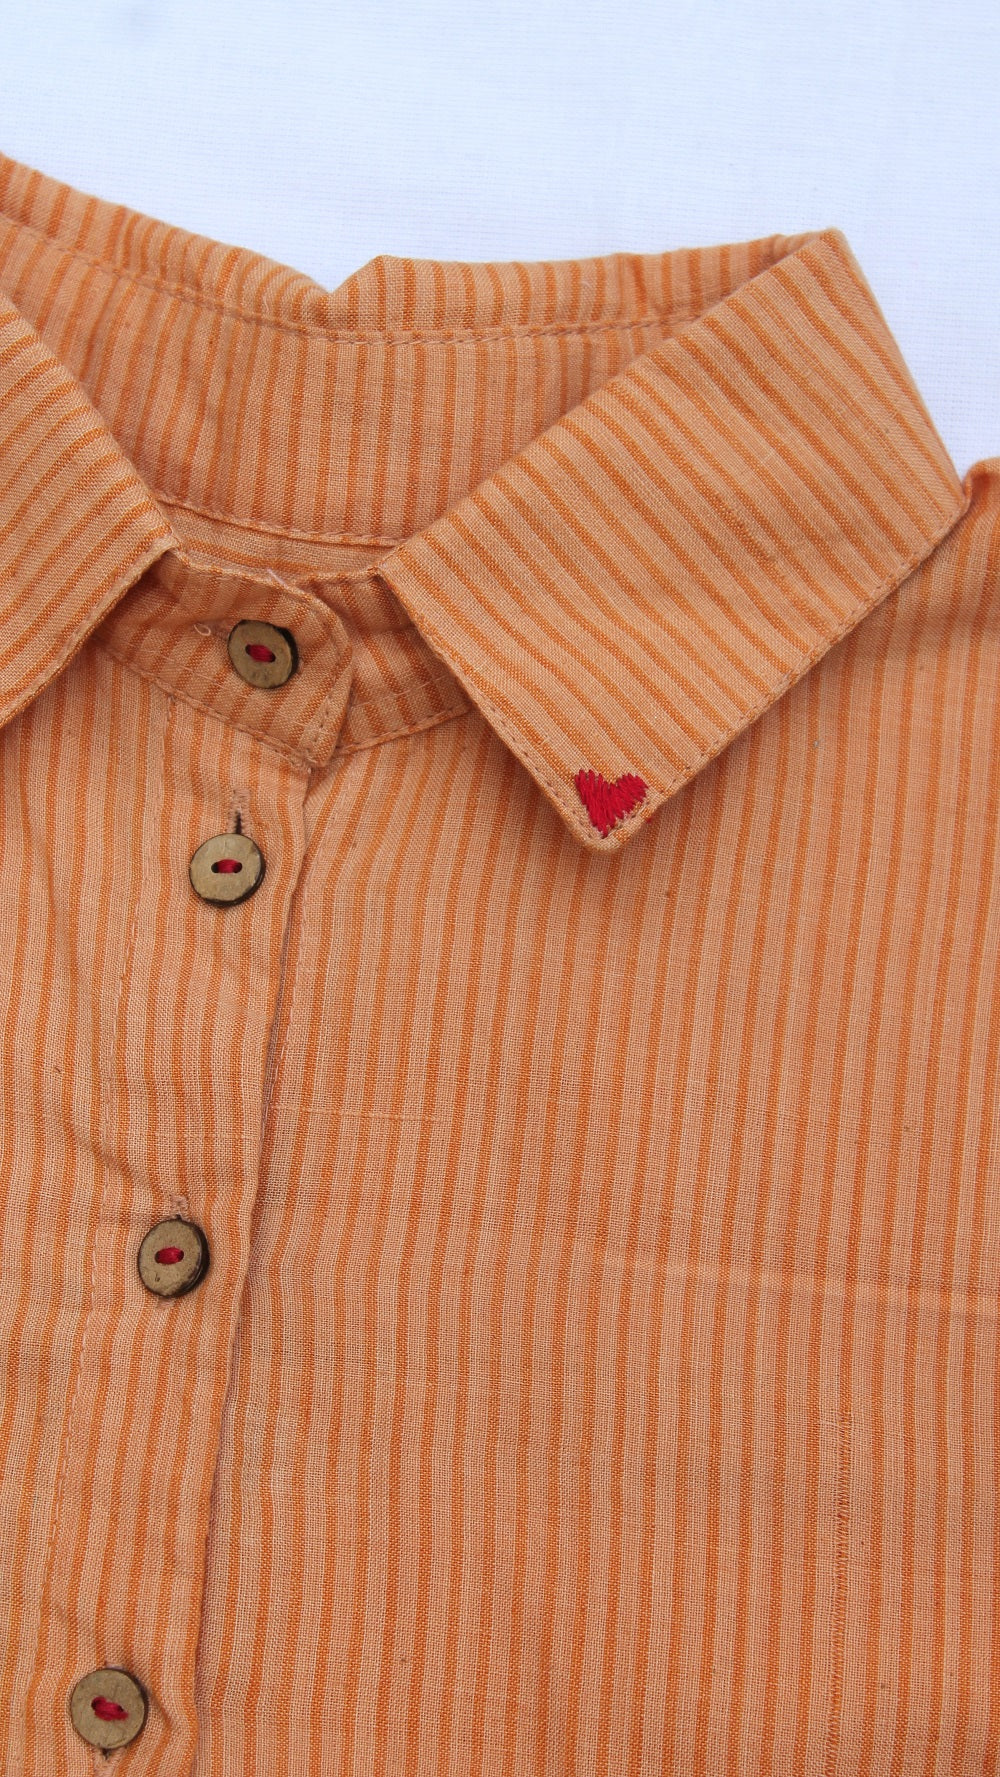 Honey Heart regular fit shirt